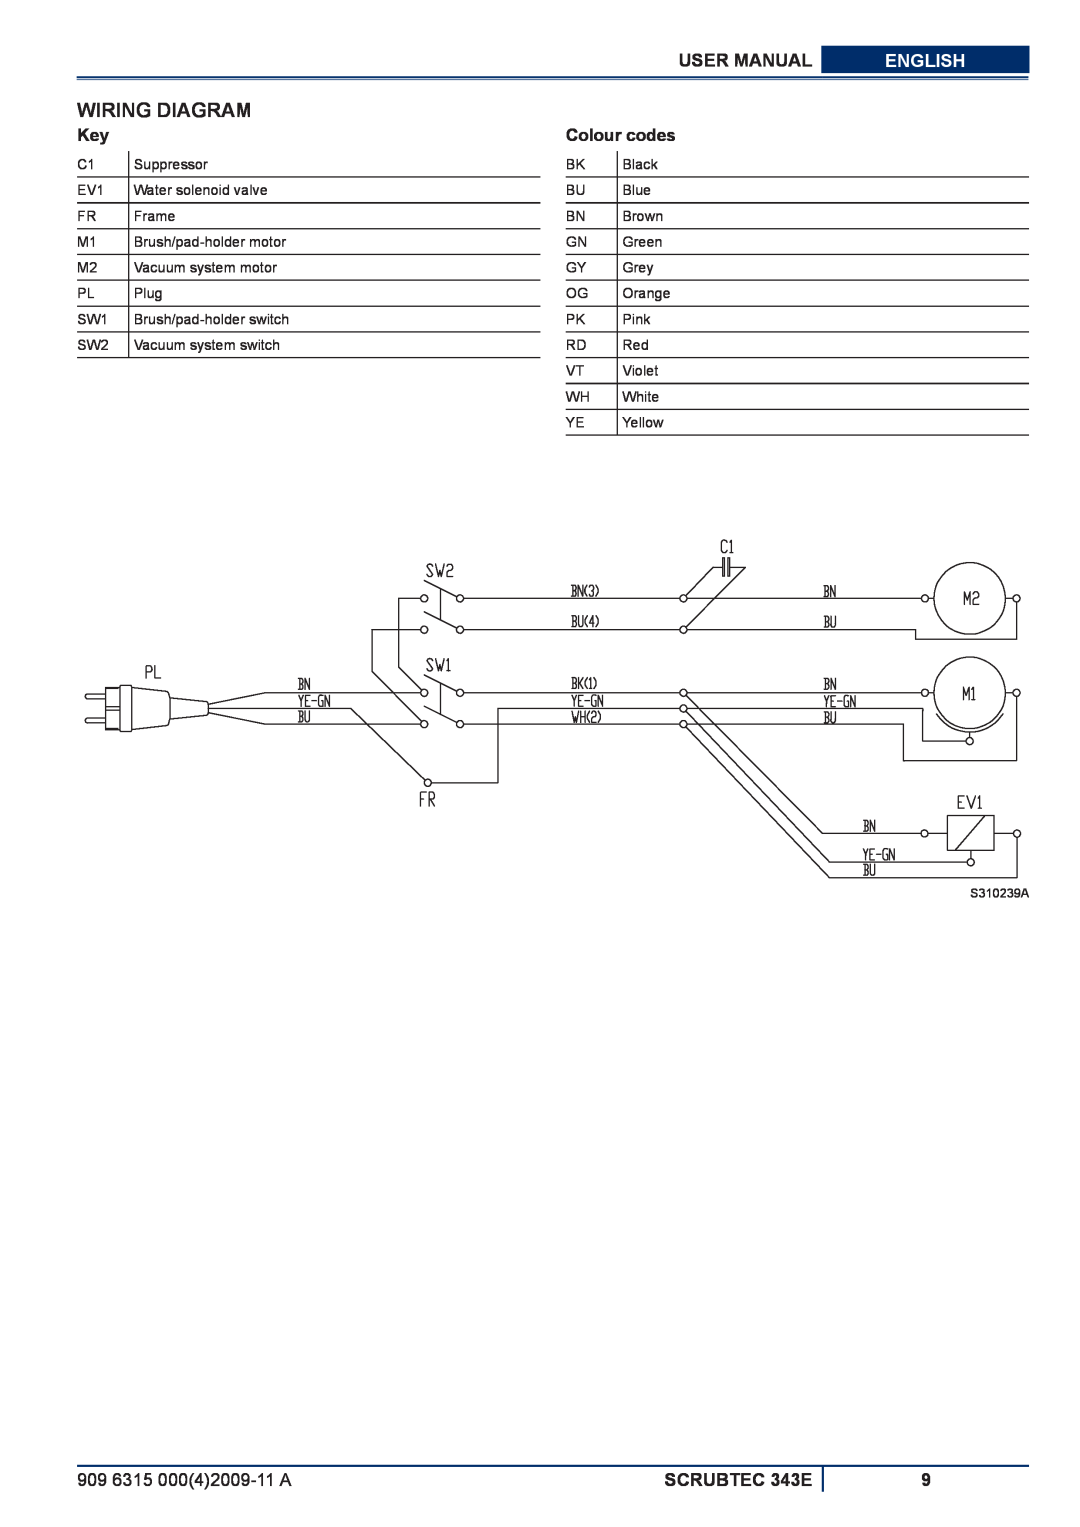 Nilfisk-ALTO Wiring Diagram, Colour codes, User Manual, English, 909 6315 00042009-11A, SCRUBTEC 343E 